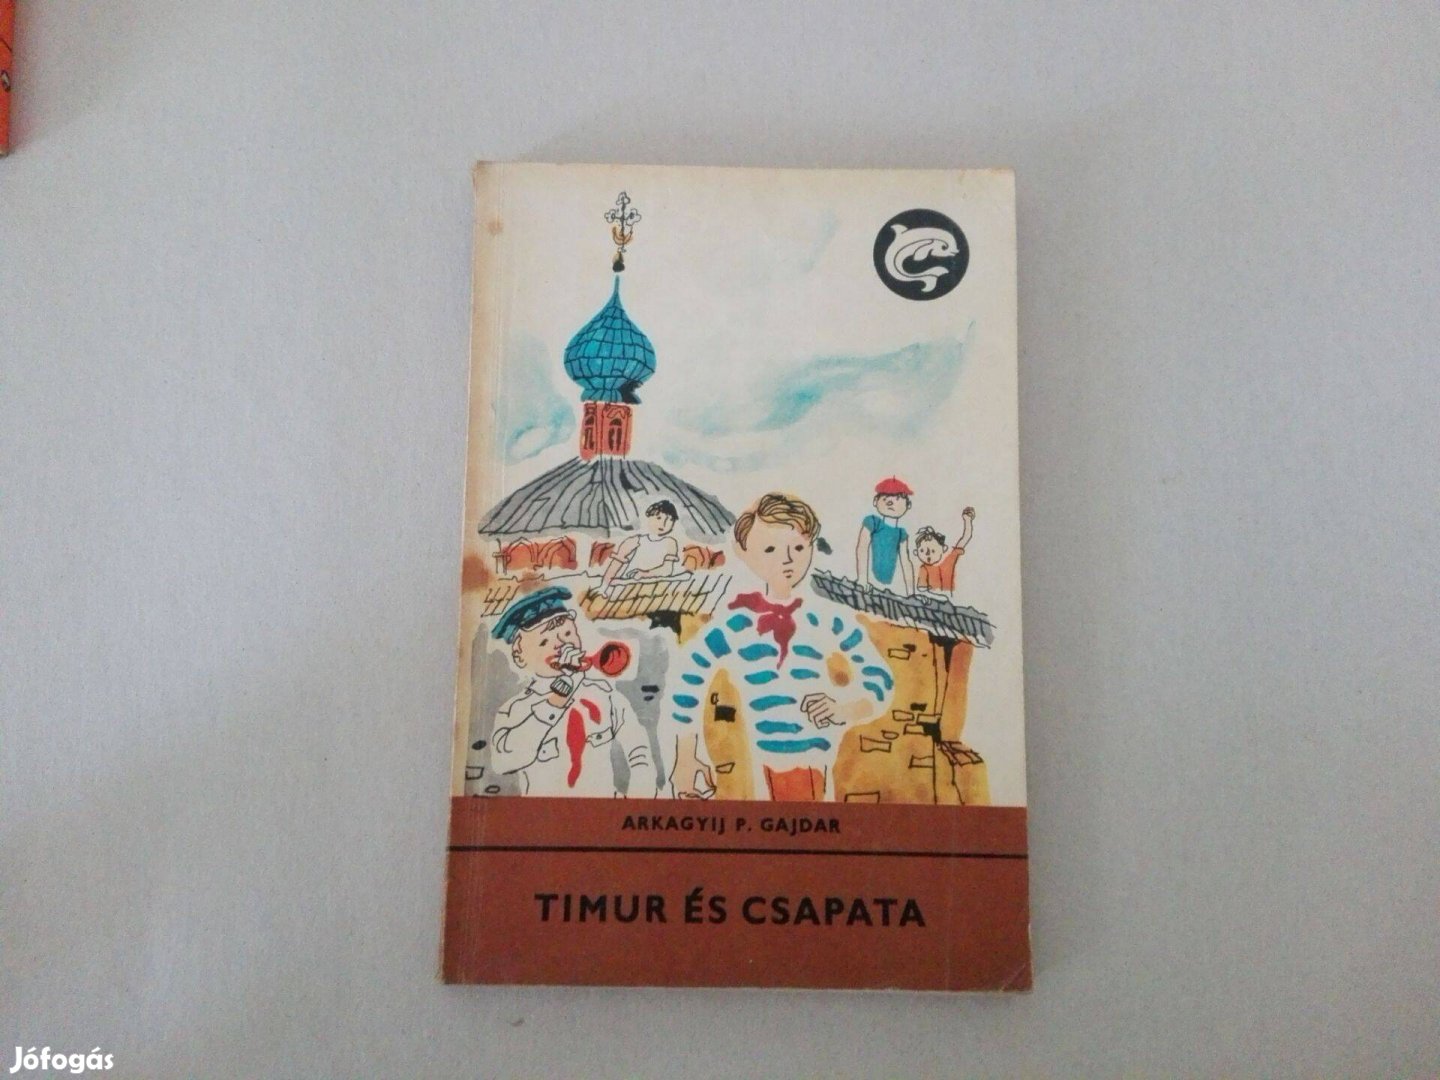 Gajdár Arkagyij P.: Timur és csapata c.Delfin könyv jó állapotba eladó